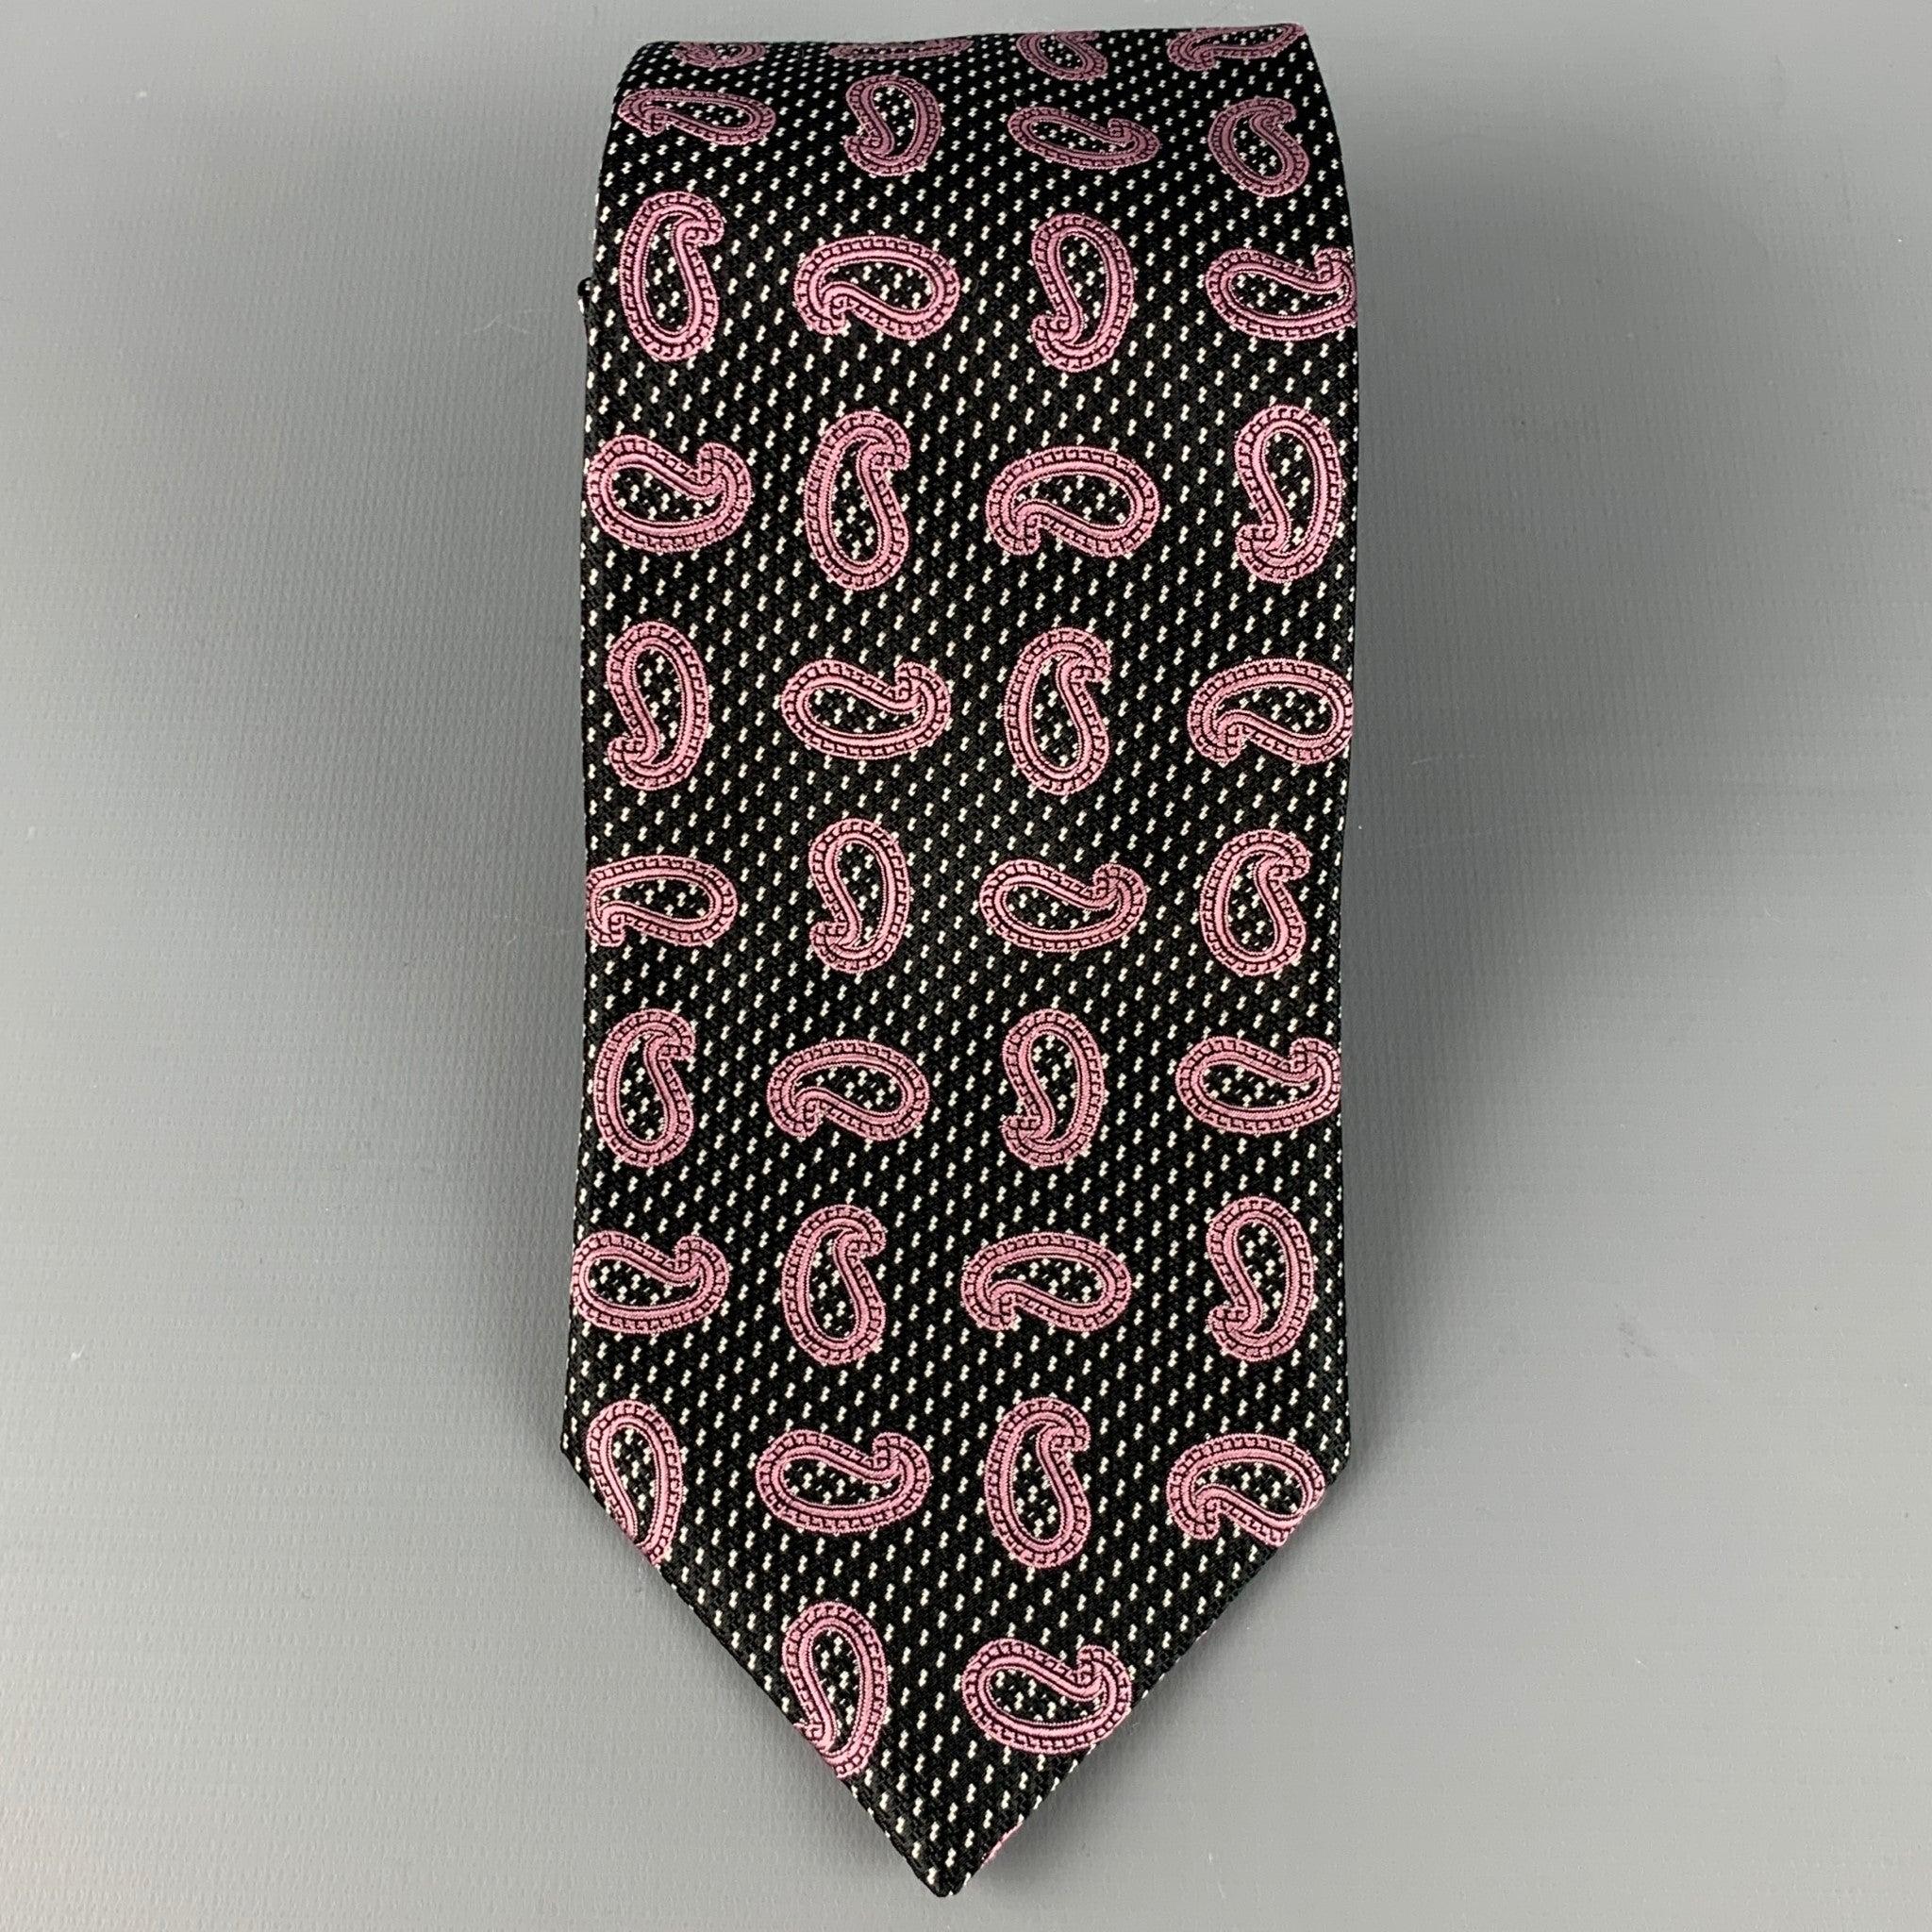 ERMENEGILDO ZEGNA
Krawatte aus schwarzer Seide mit lila Paisleymuster. Made in Italy. sehr guter gebrauchter Zustand. 

Abmessungen: 
  Breite: 3,5 Zoll Länge: 60 Zoll 
  
  
 
Sui Generis-Referenz: 126577
Kategorie: Krawatte
Mehr Details
   